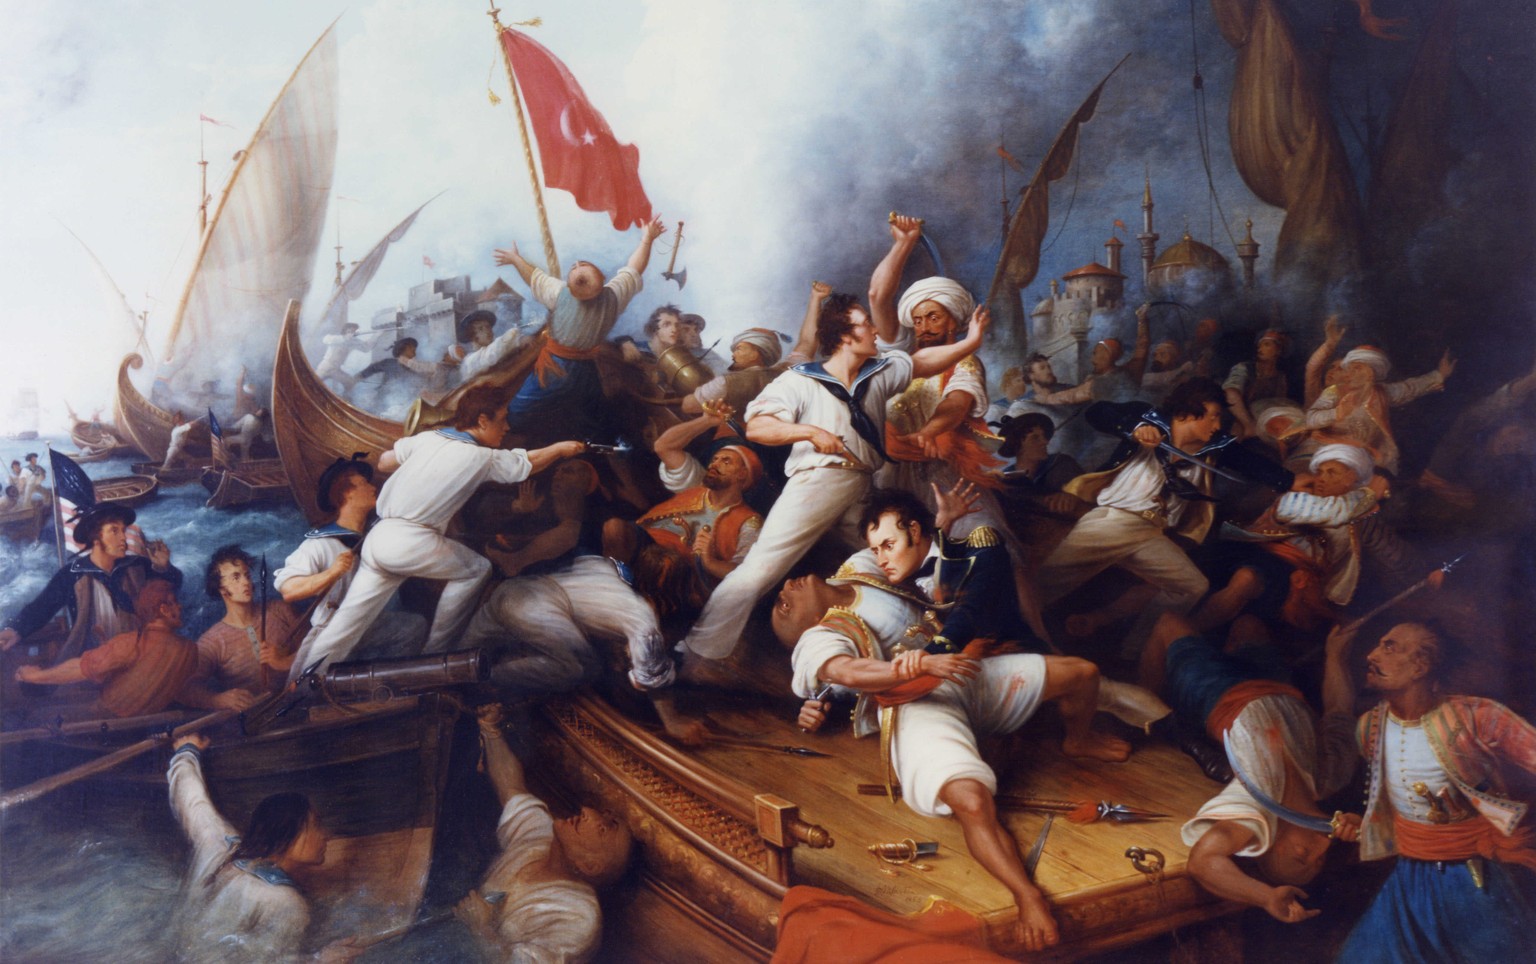 Stephen Decatur kapert mit seinen Männern die im Hafen von Tripolis liegende Philadelphia. Seine Männer töten mindestens 20 Koraren, der Rest springt von Bord, bevor das Schiff in Flammen aufgeht.